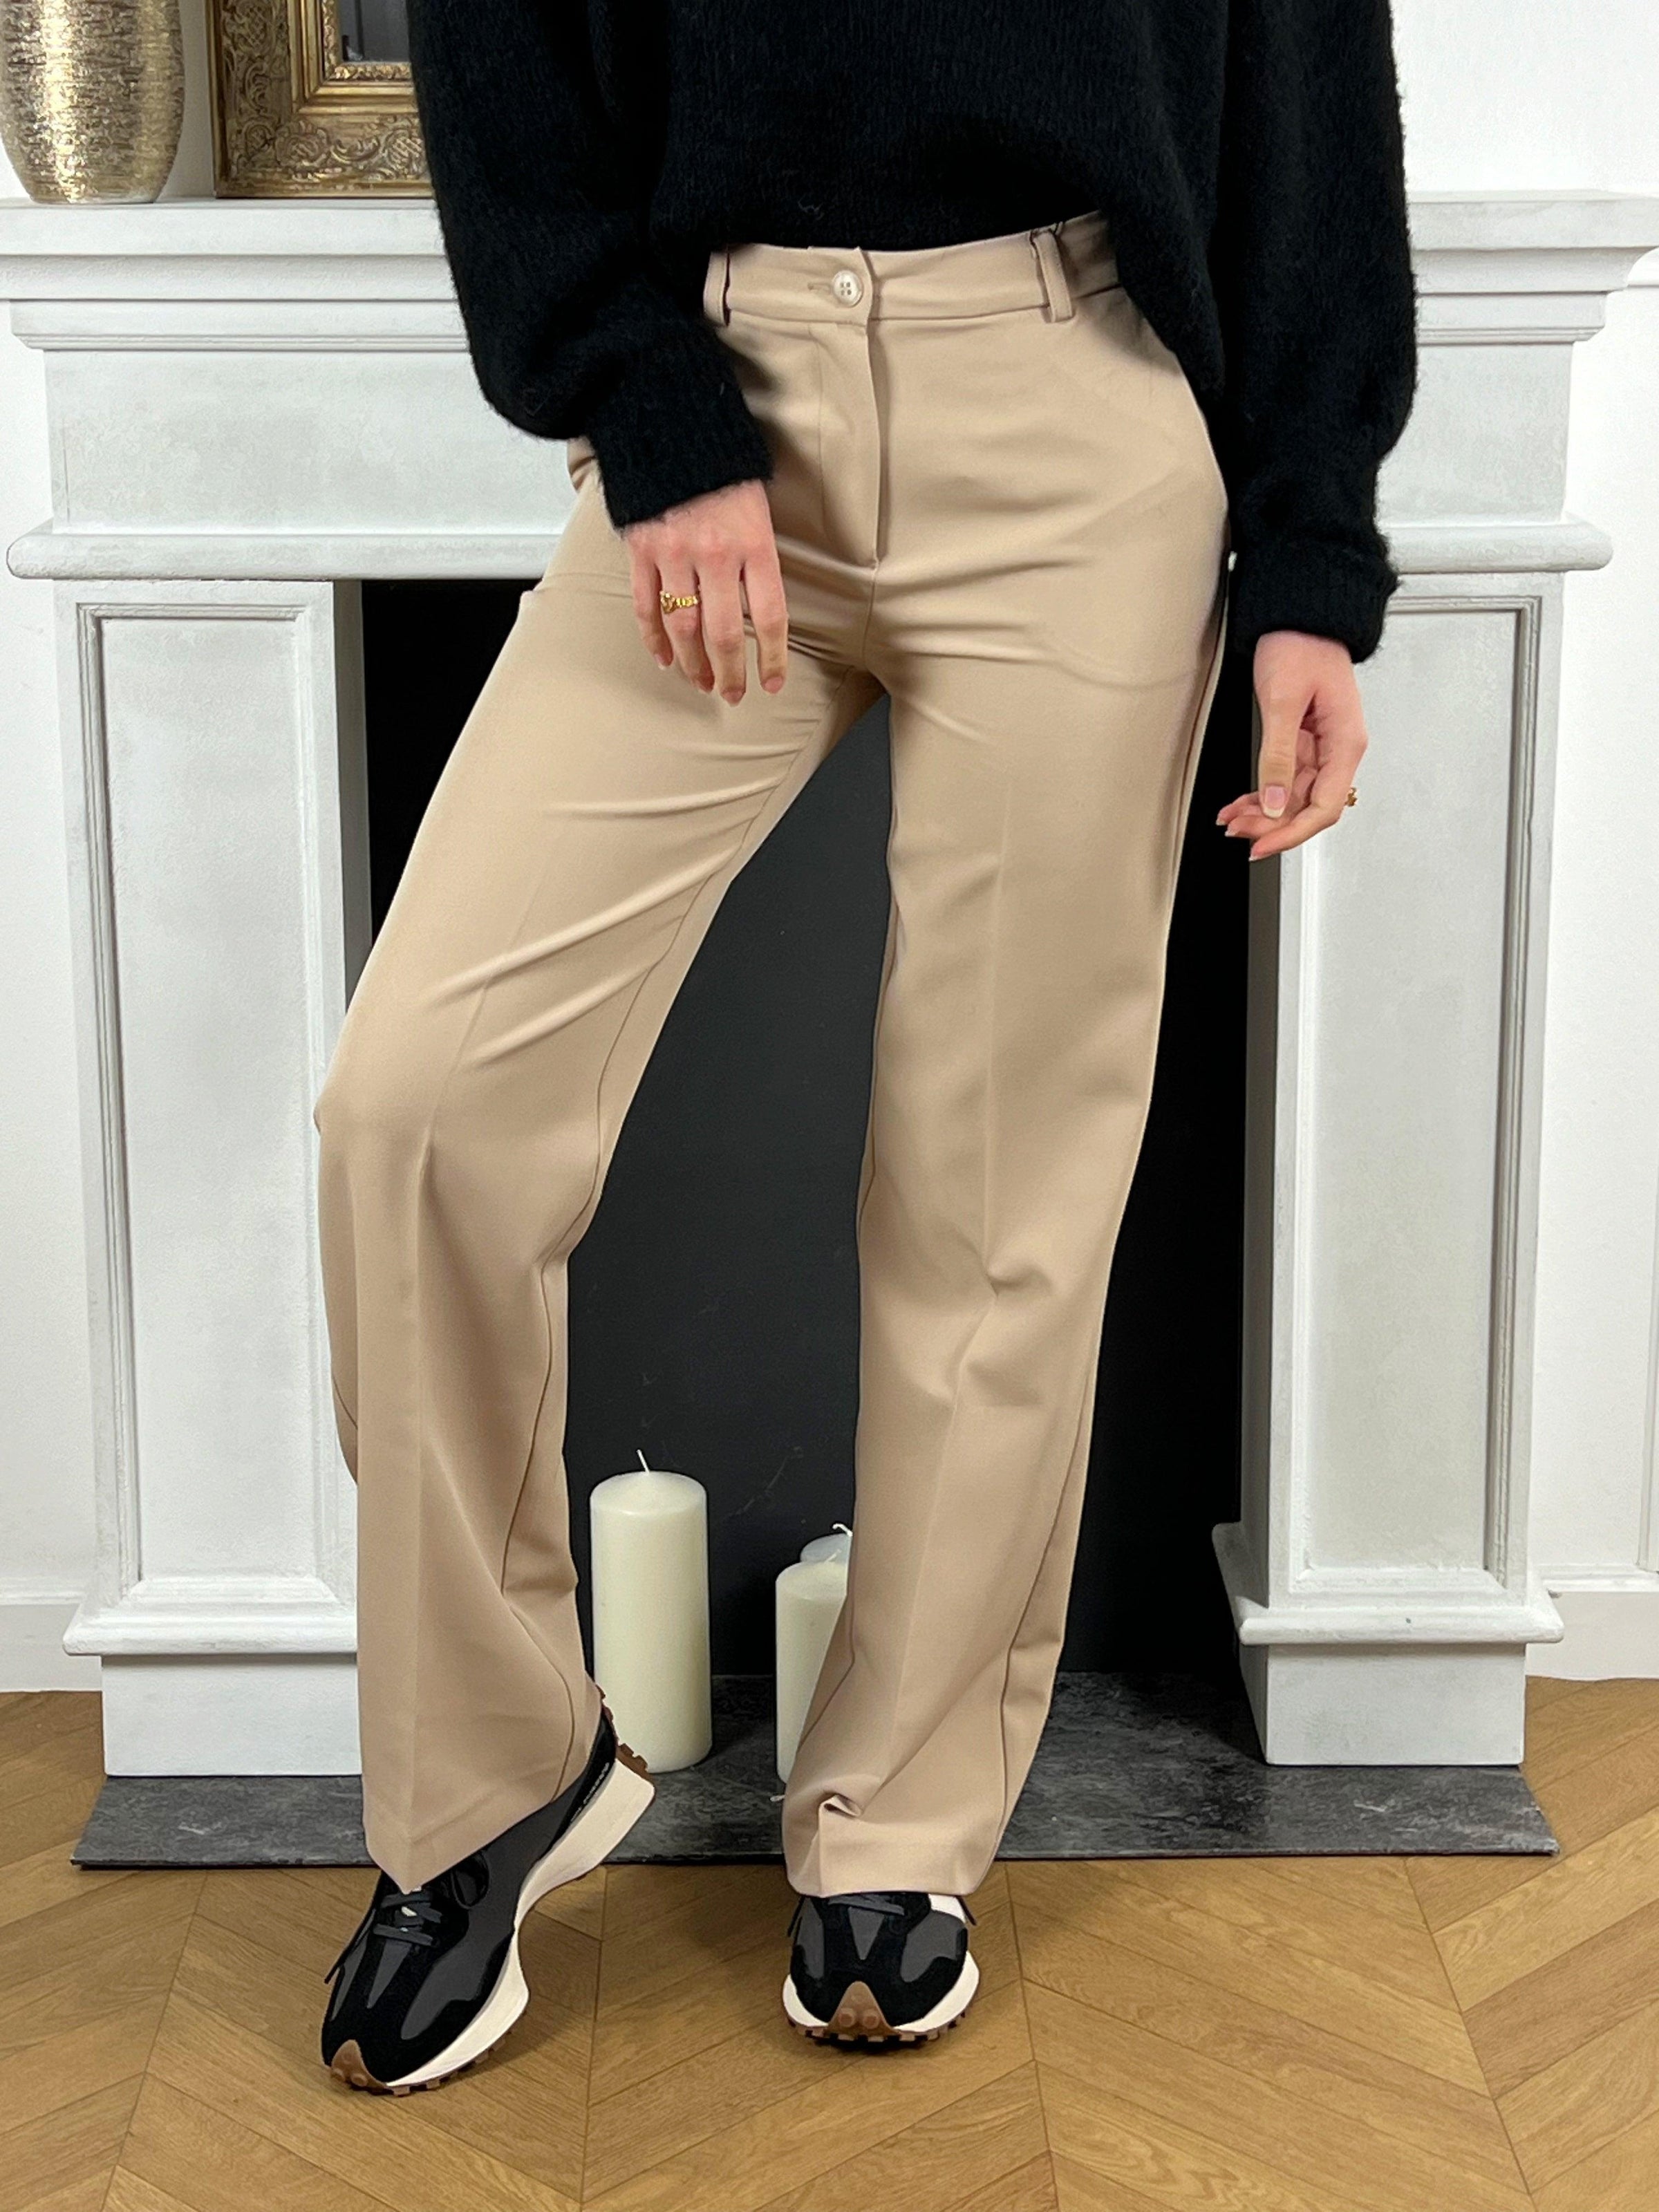 Pantalon beige taille haute femme Pantalon gris Coupe droite Fermeture à zip avec un bouton Passants pour ceinture 2 latérales Couleur : beige Composition : 90% Polyester 10% Elasthanne Made in Italie